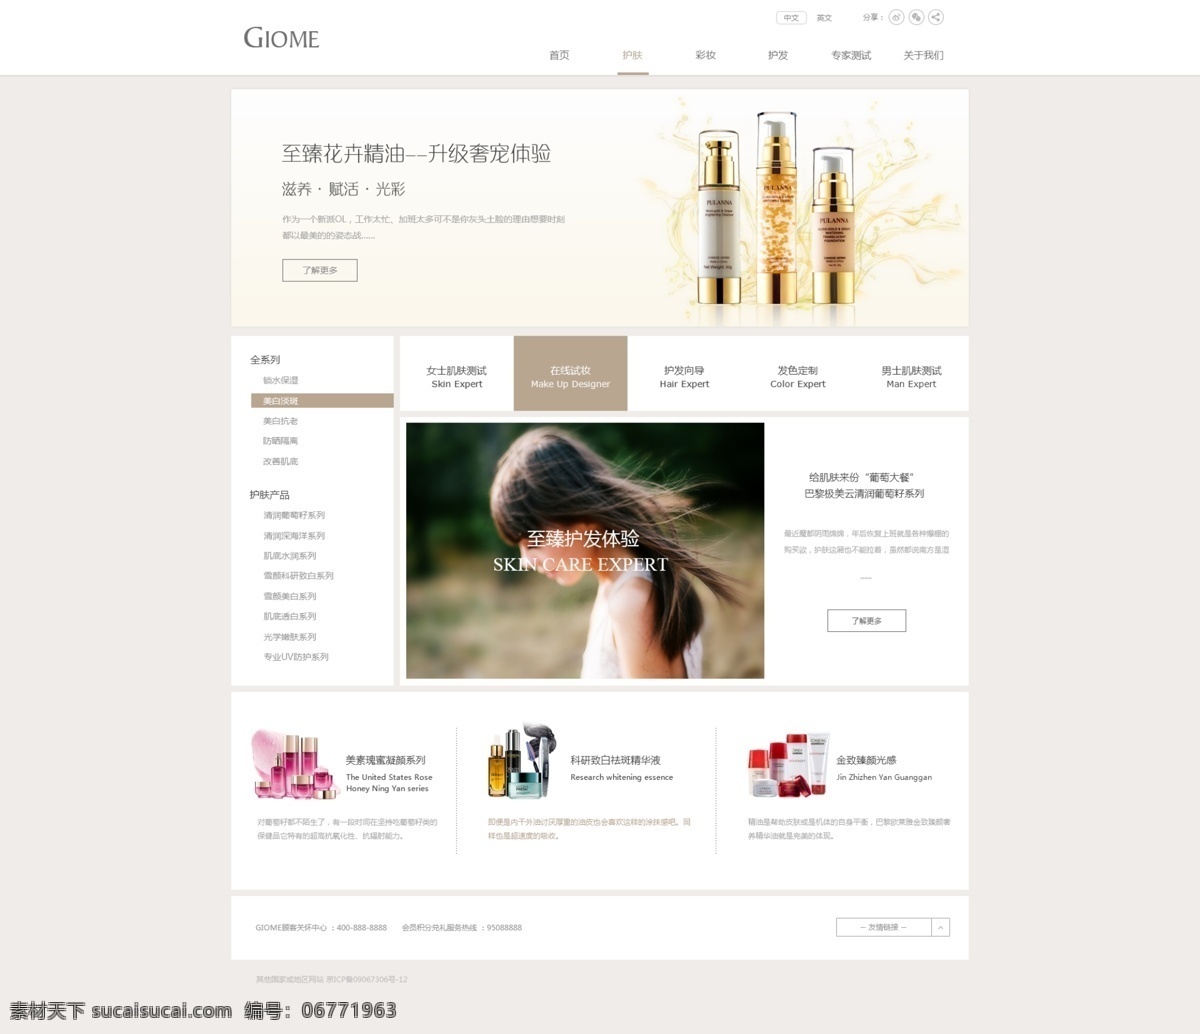 化妆品首页 化妆品 网站模版 官网模版 化妆品模版 简约风格 web 界面设计 中文模板 白色